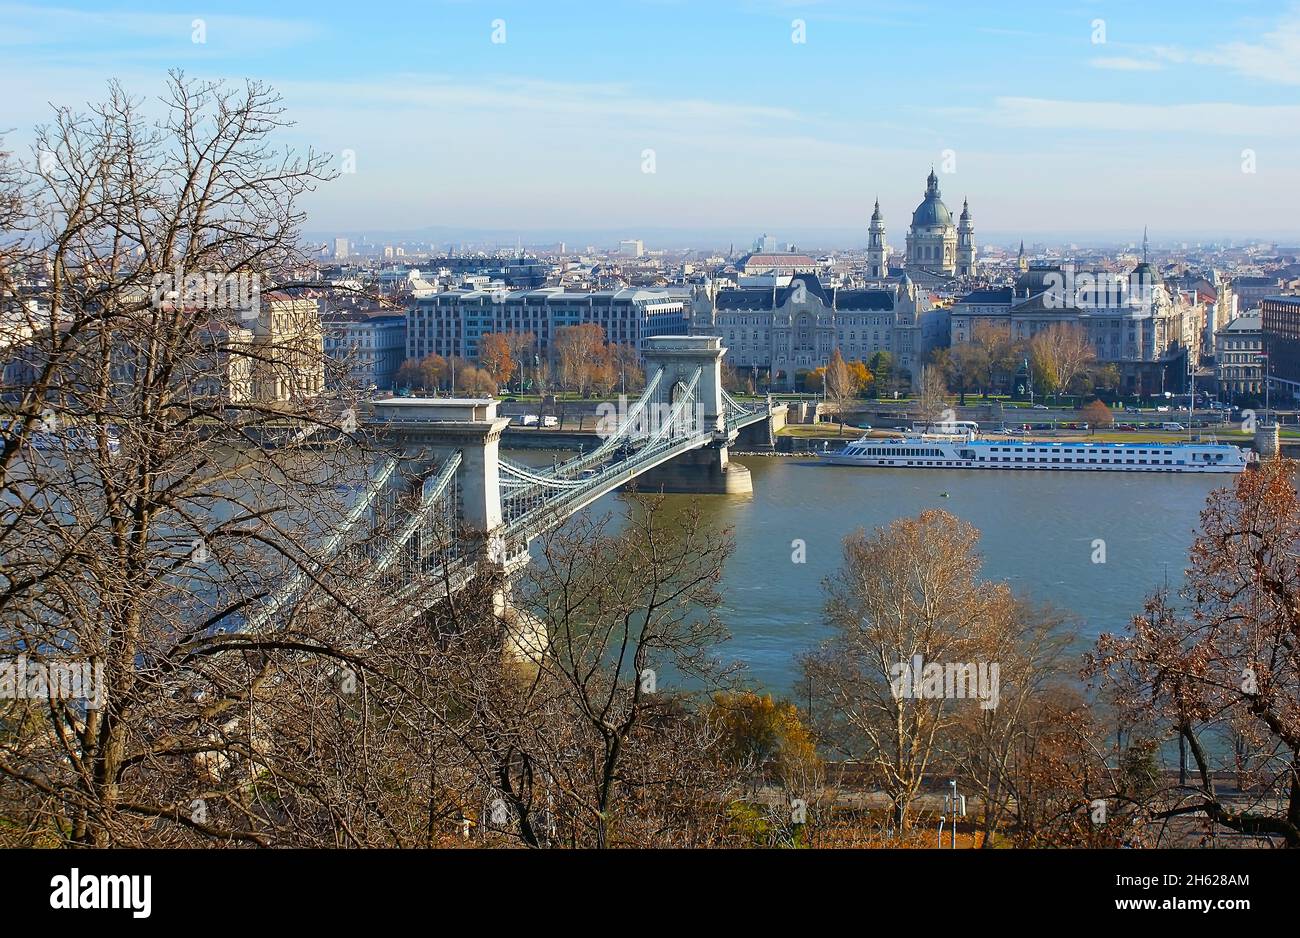 Il paesaggio urbano dalla collina del Castello di Buda, osservando il Danubio, Ponte delle catene, palazzi storici, Palazzo Gresham e la Basilica di Santo Stefano, dominando il fiume Foto Stock